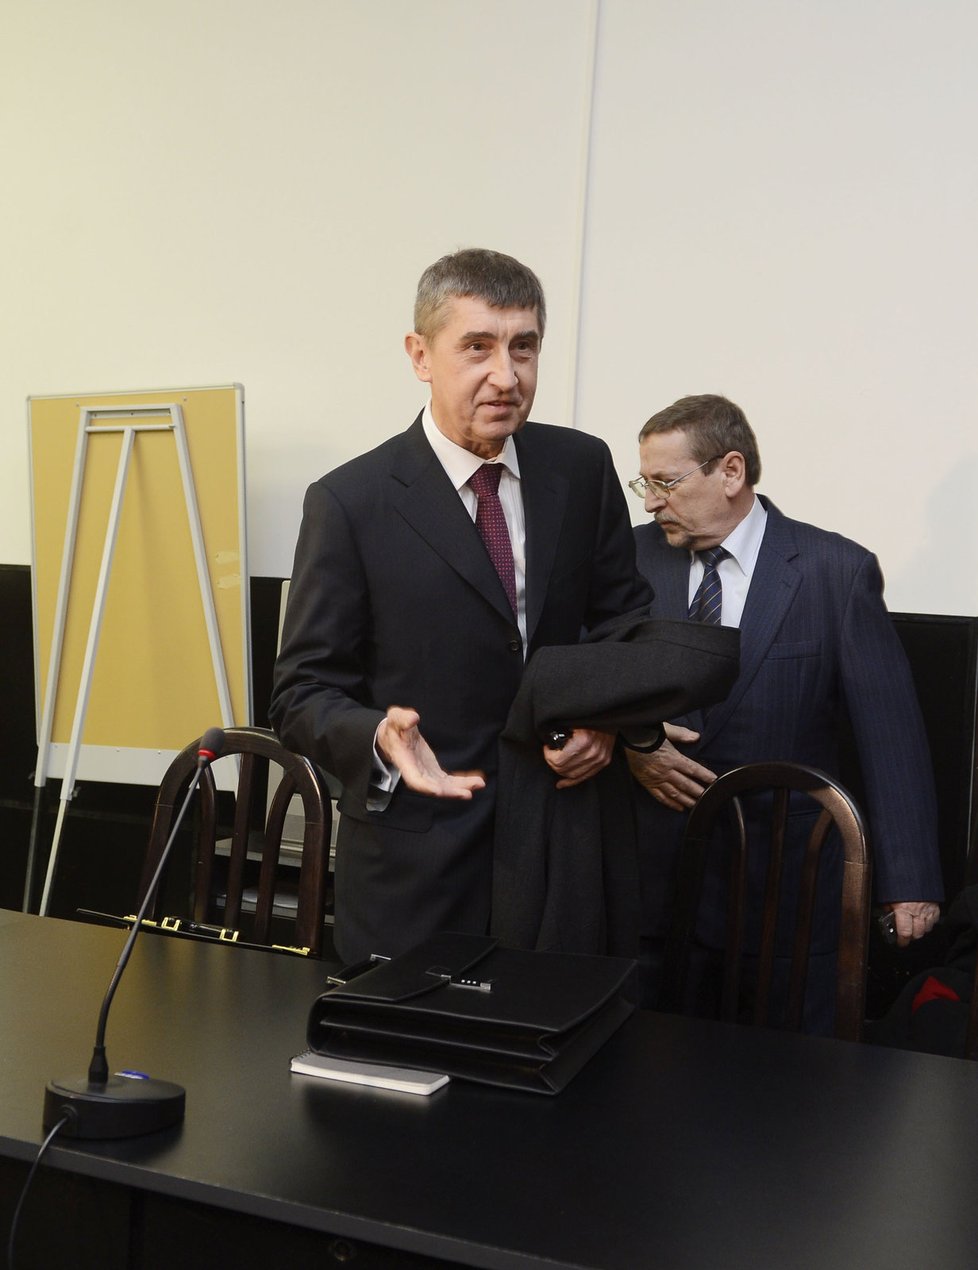 Andrej Babiš před slovenskými soudy kvůli kauze StB v roce 2014